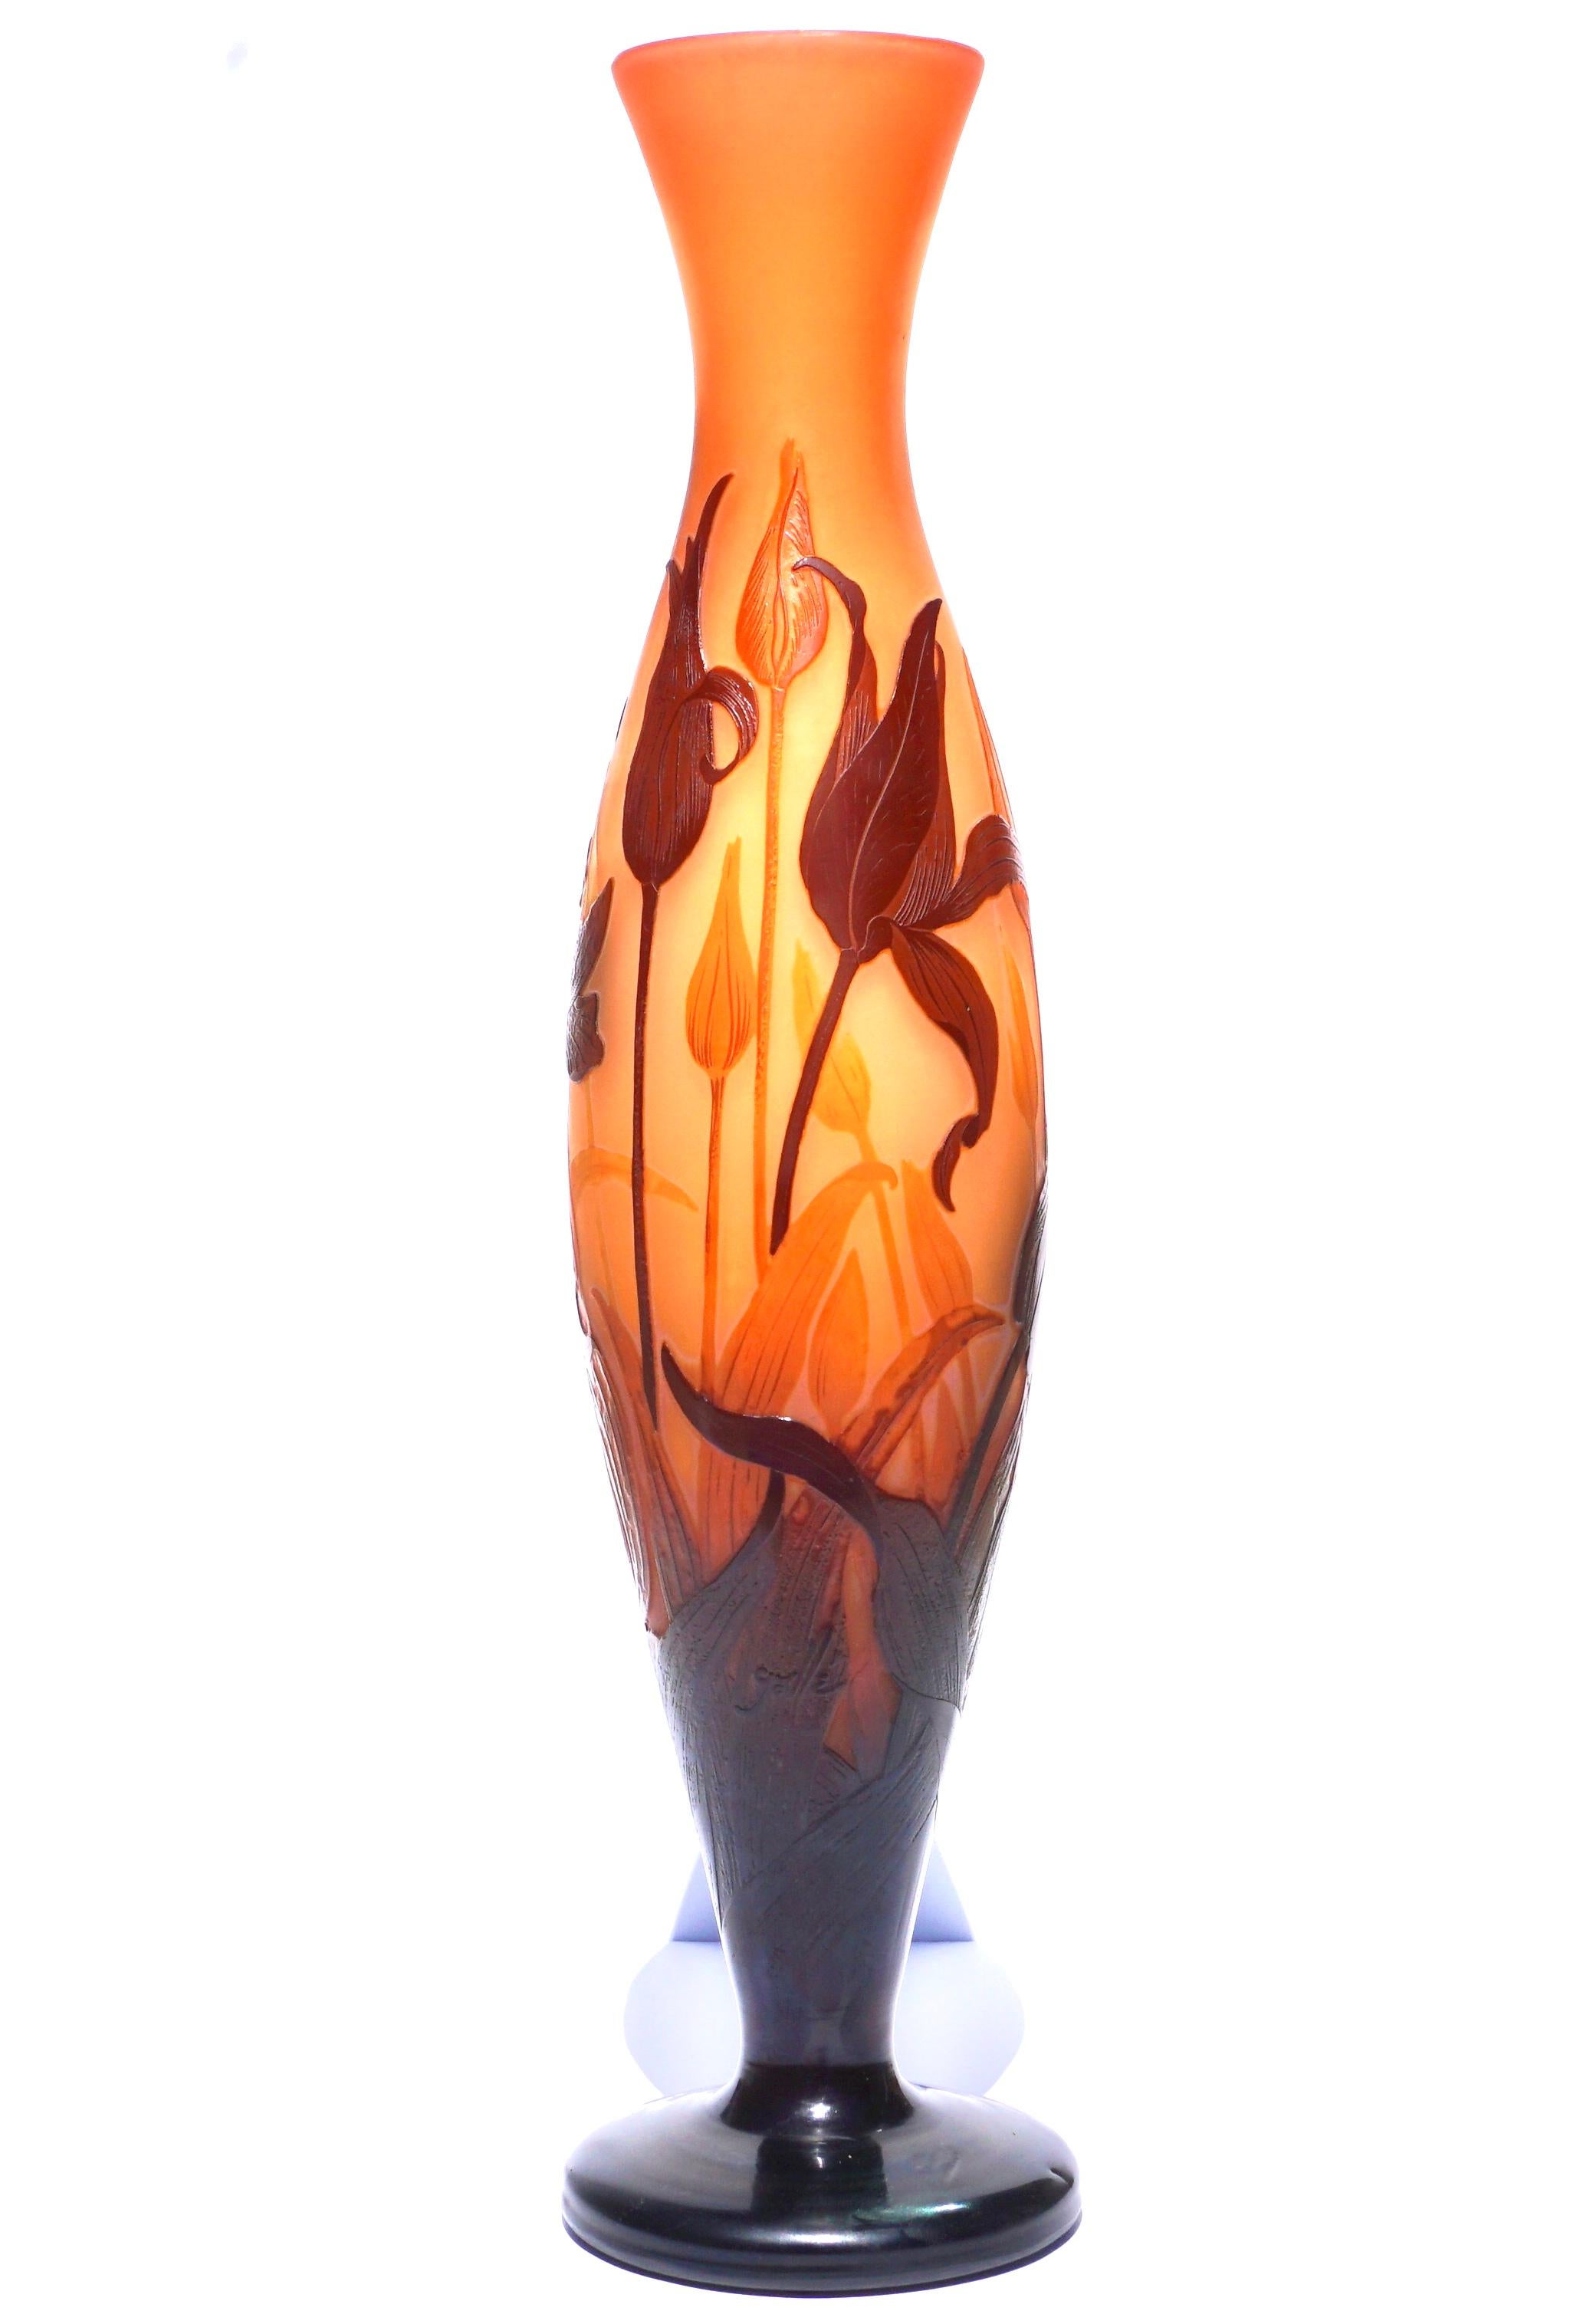 Eine bedeutende und außergewöhnliche hohe Kamee-Vase von Emile Galle. CIRCA 1900 in der Zeit des Jugendstils. Die Technik ist Rad geschnitzt, Säure geätzt und schnitzen, um diese über 20 Zoll Meisterwerk der Tiger Lilies in ihren verschiedenen